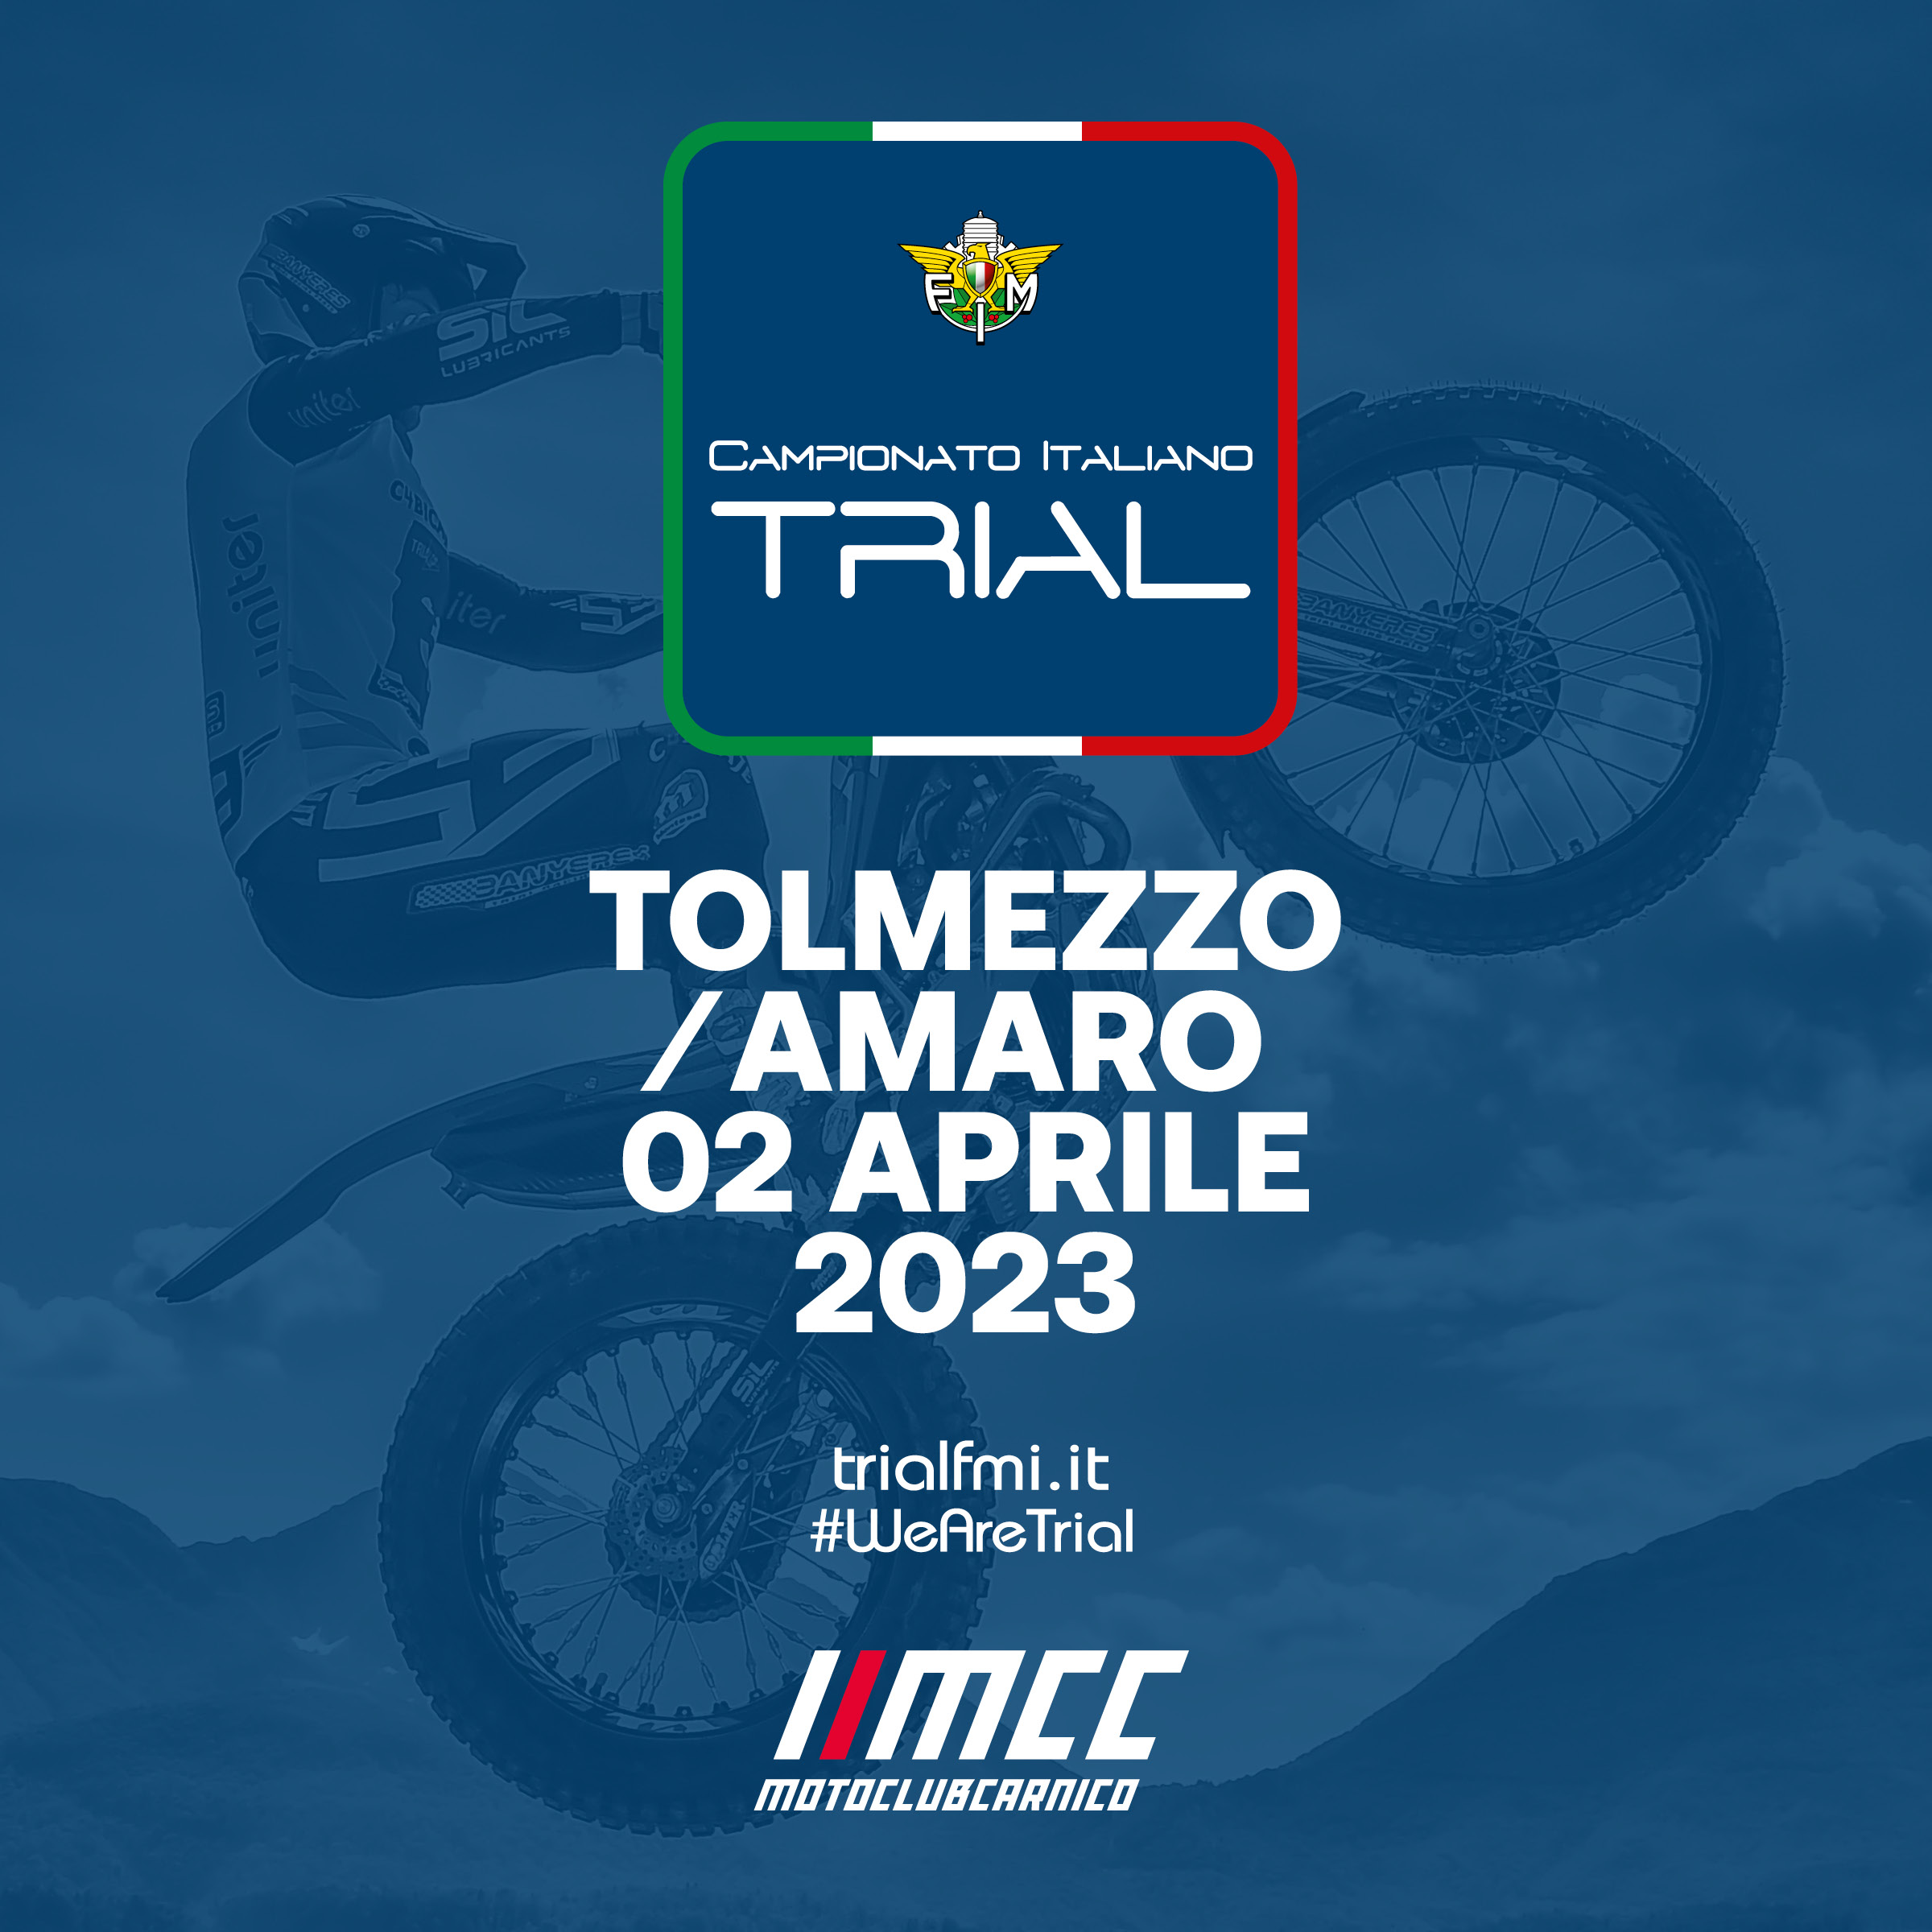 Campionato Italiano Trial 2023